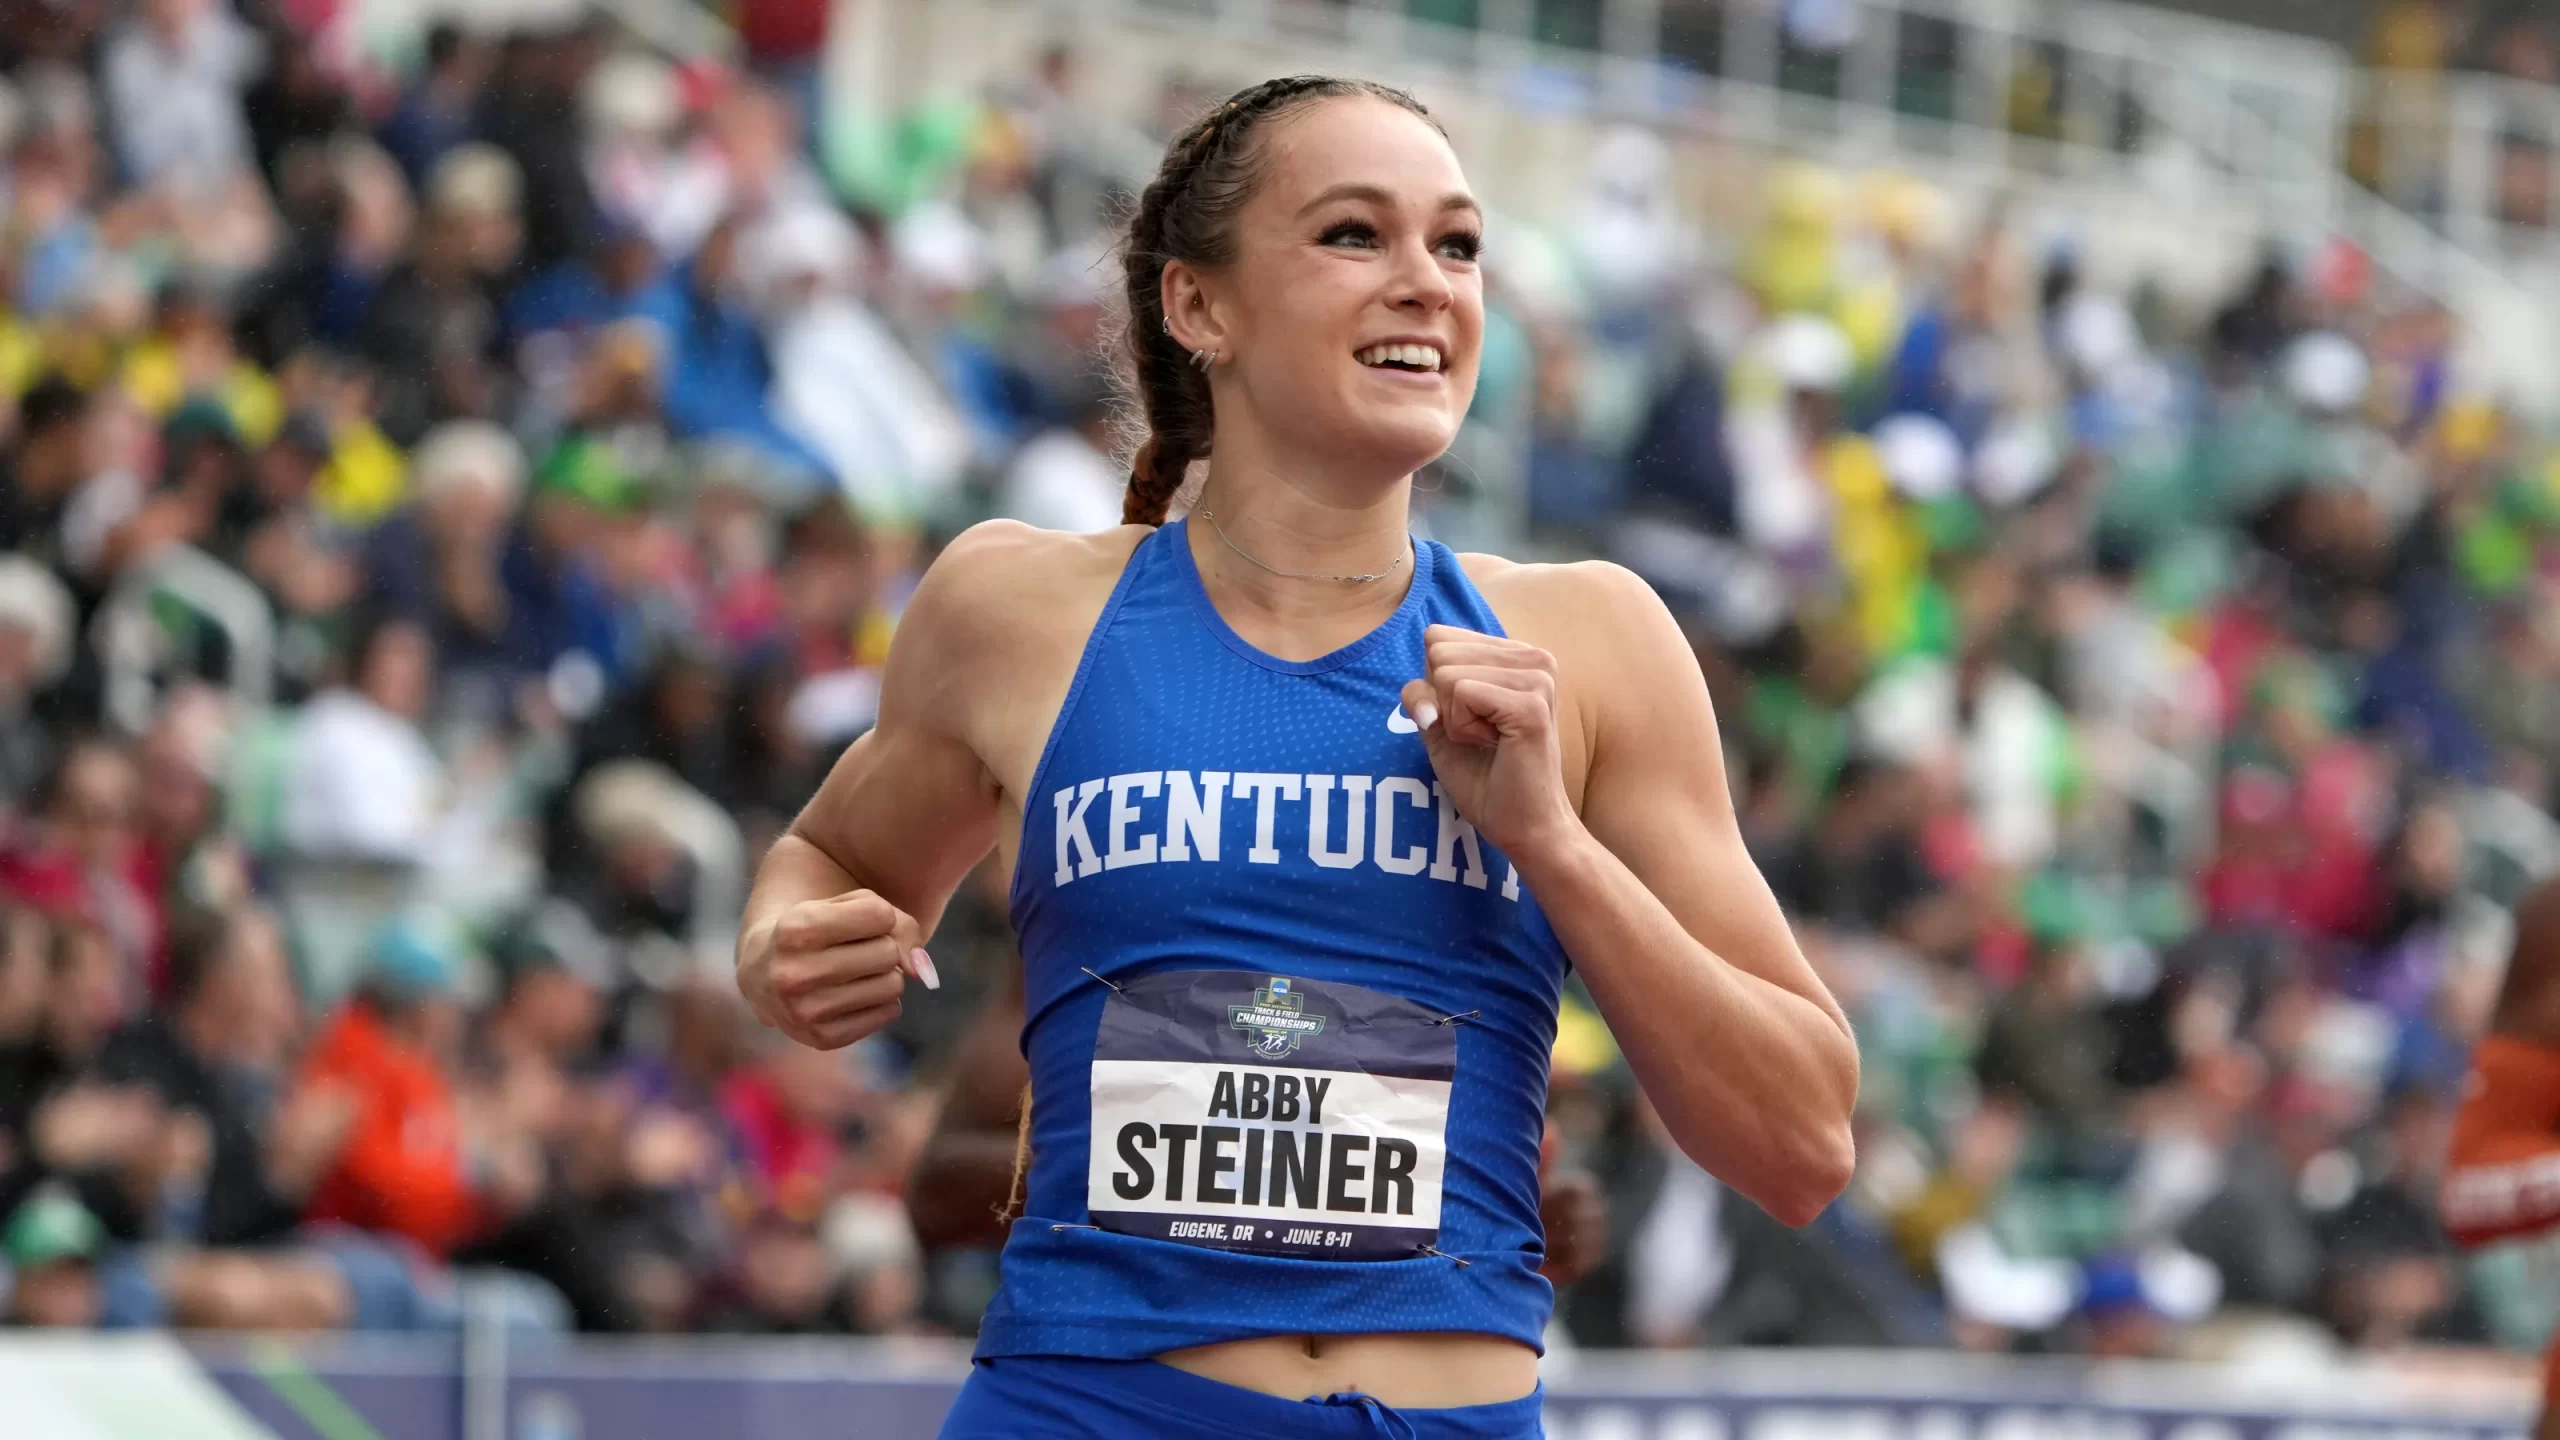 Abby Steiner wins US trials 2022